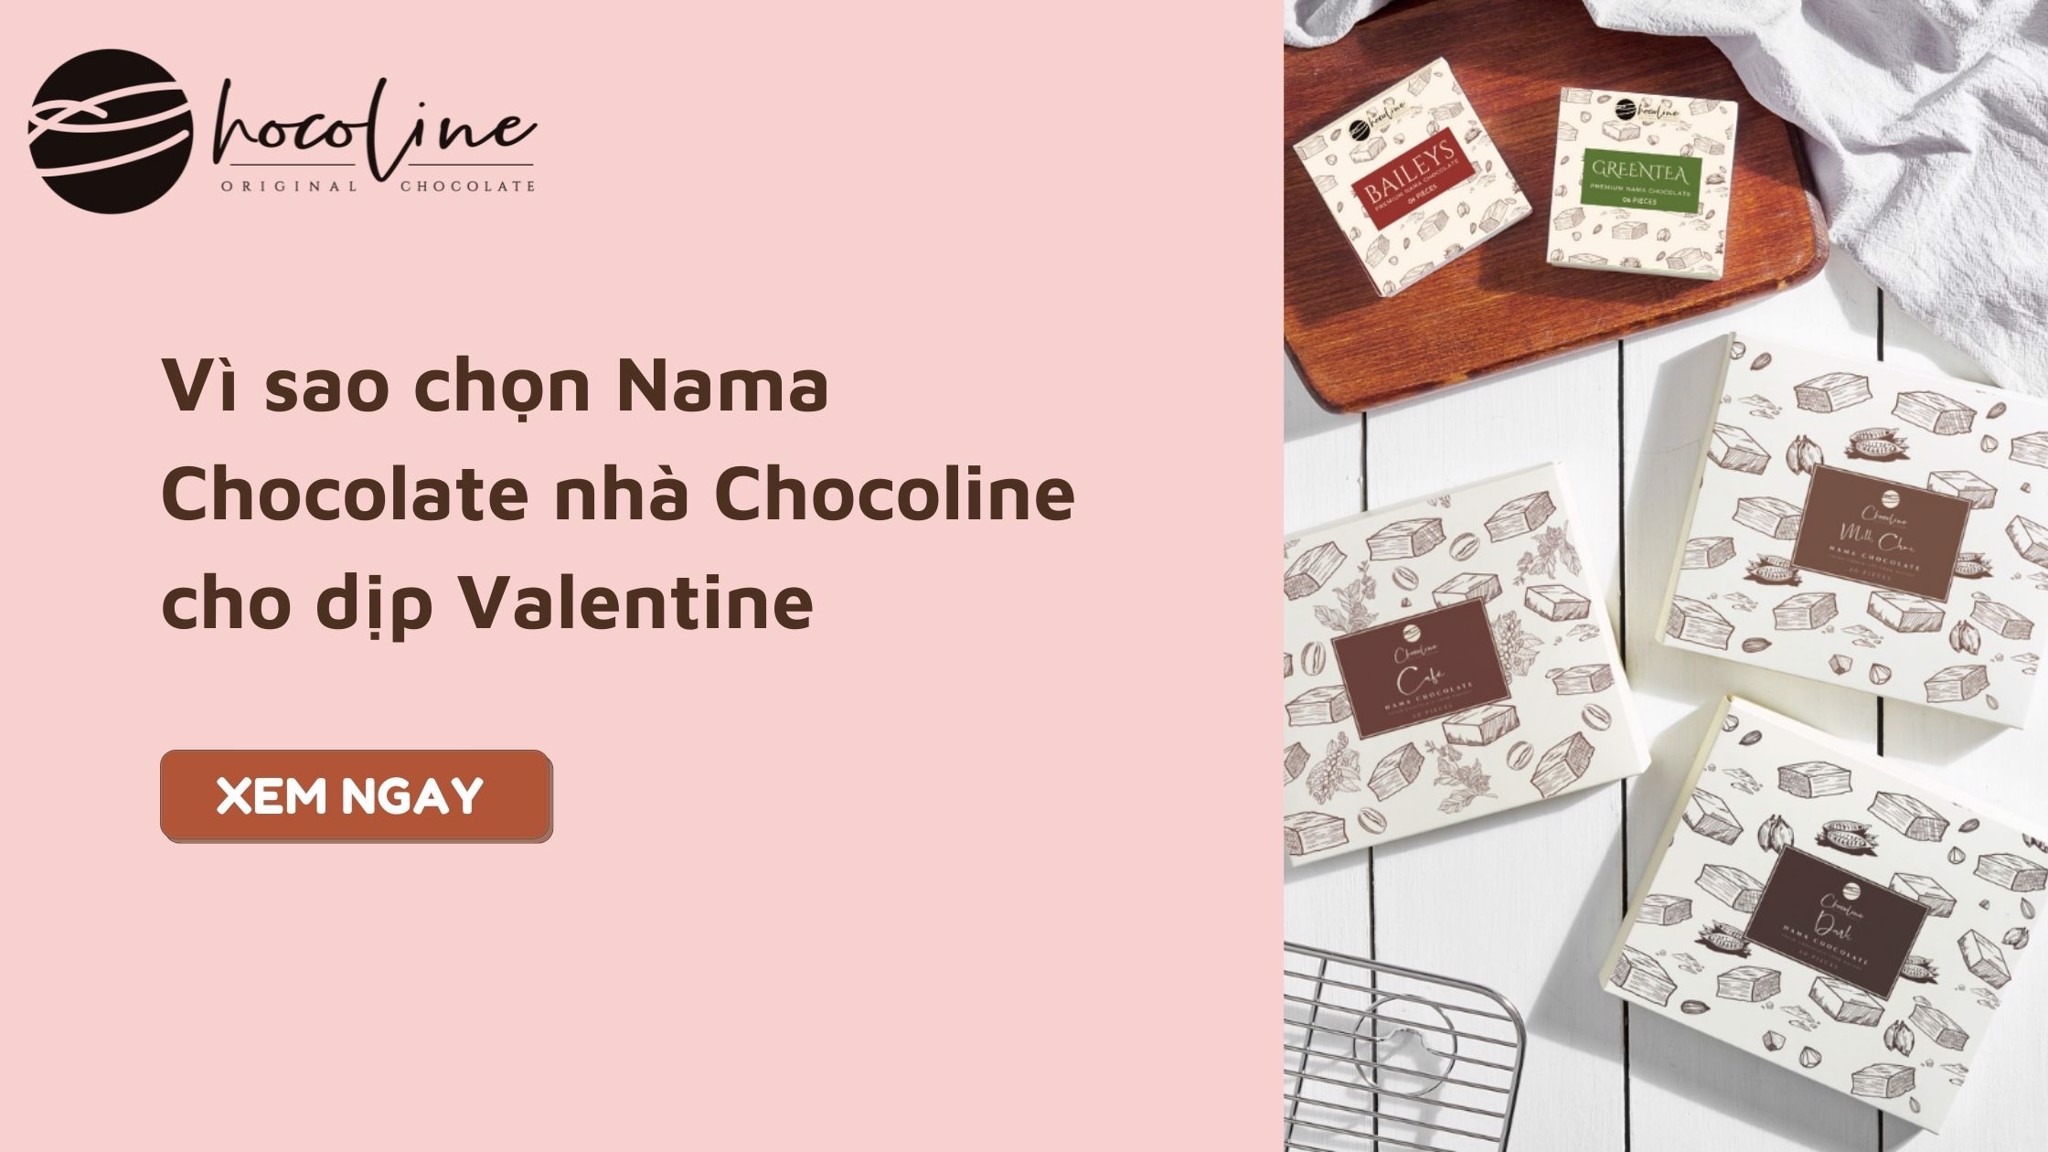 Vì sao nên chọn Nama Chocolate nhà Chocoline dịp Valentine